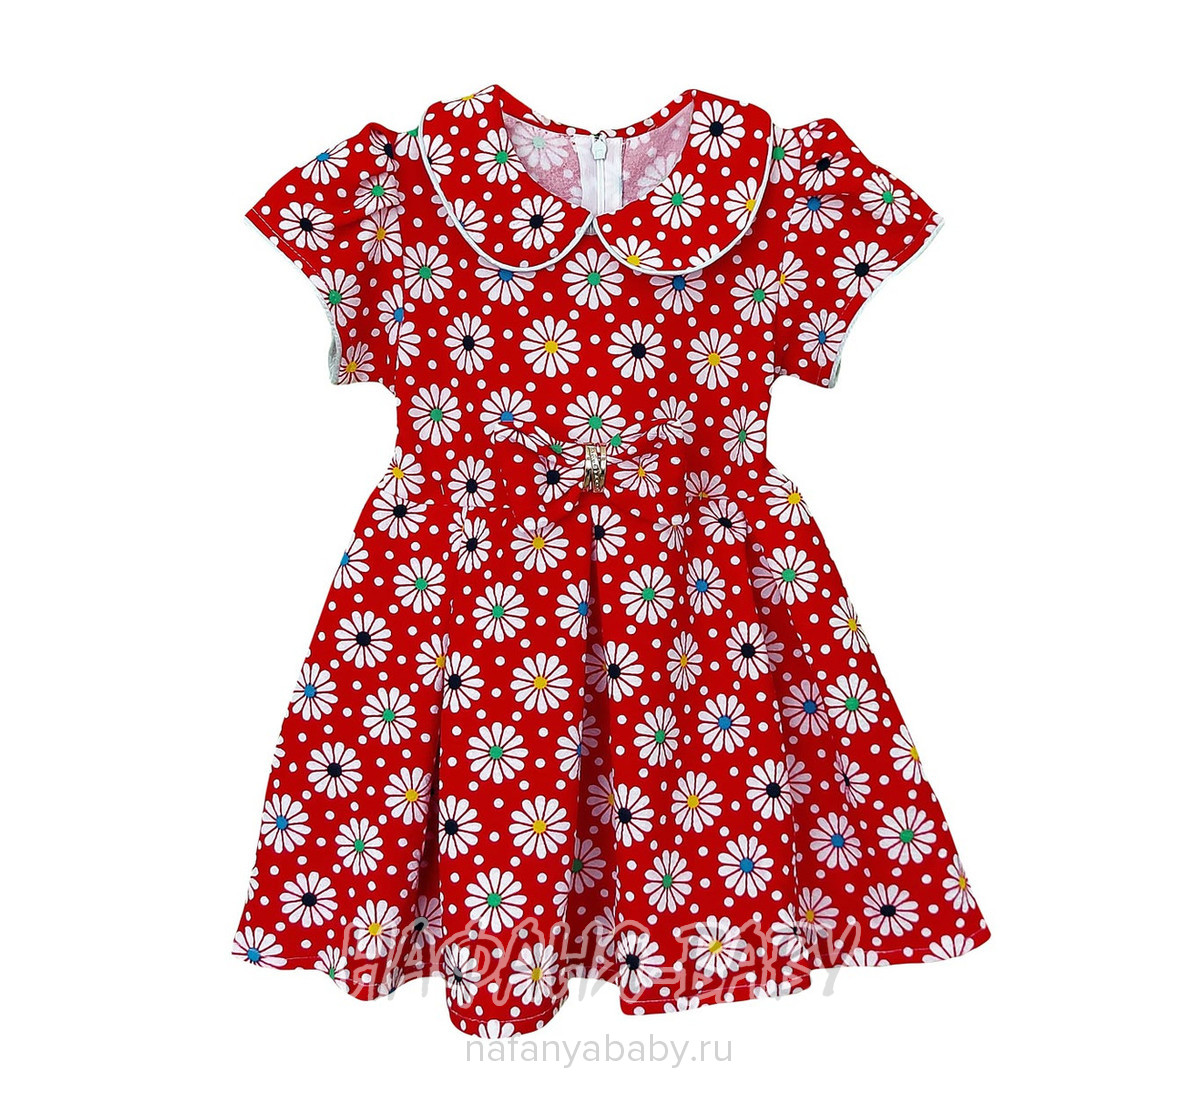 Детское платье KGMART арт: 2199, 5-9 лет, 1-4 года, цвет красный, оптом 